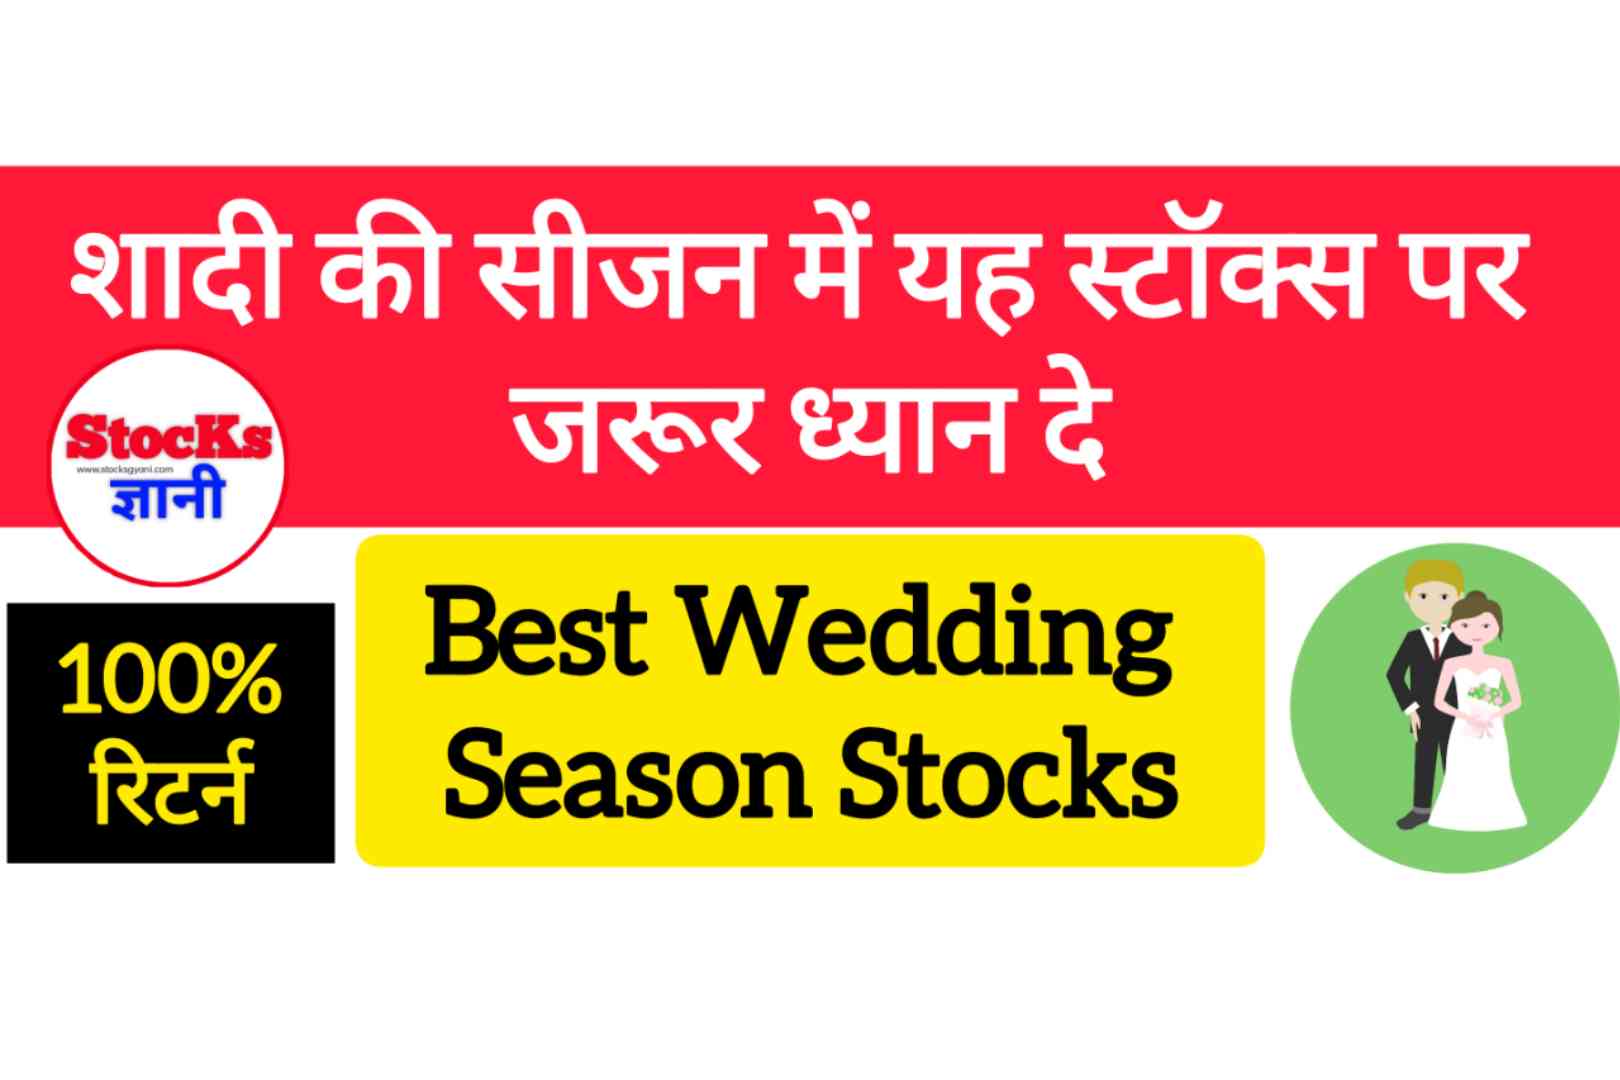 शादी के सीजन में यह स्टॉक्स पर जरूर ध्यान दे बढ़िया रिटर्न मिलेगा | Wedding Season Stocks Hindi